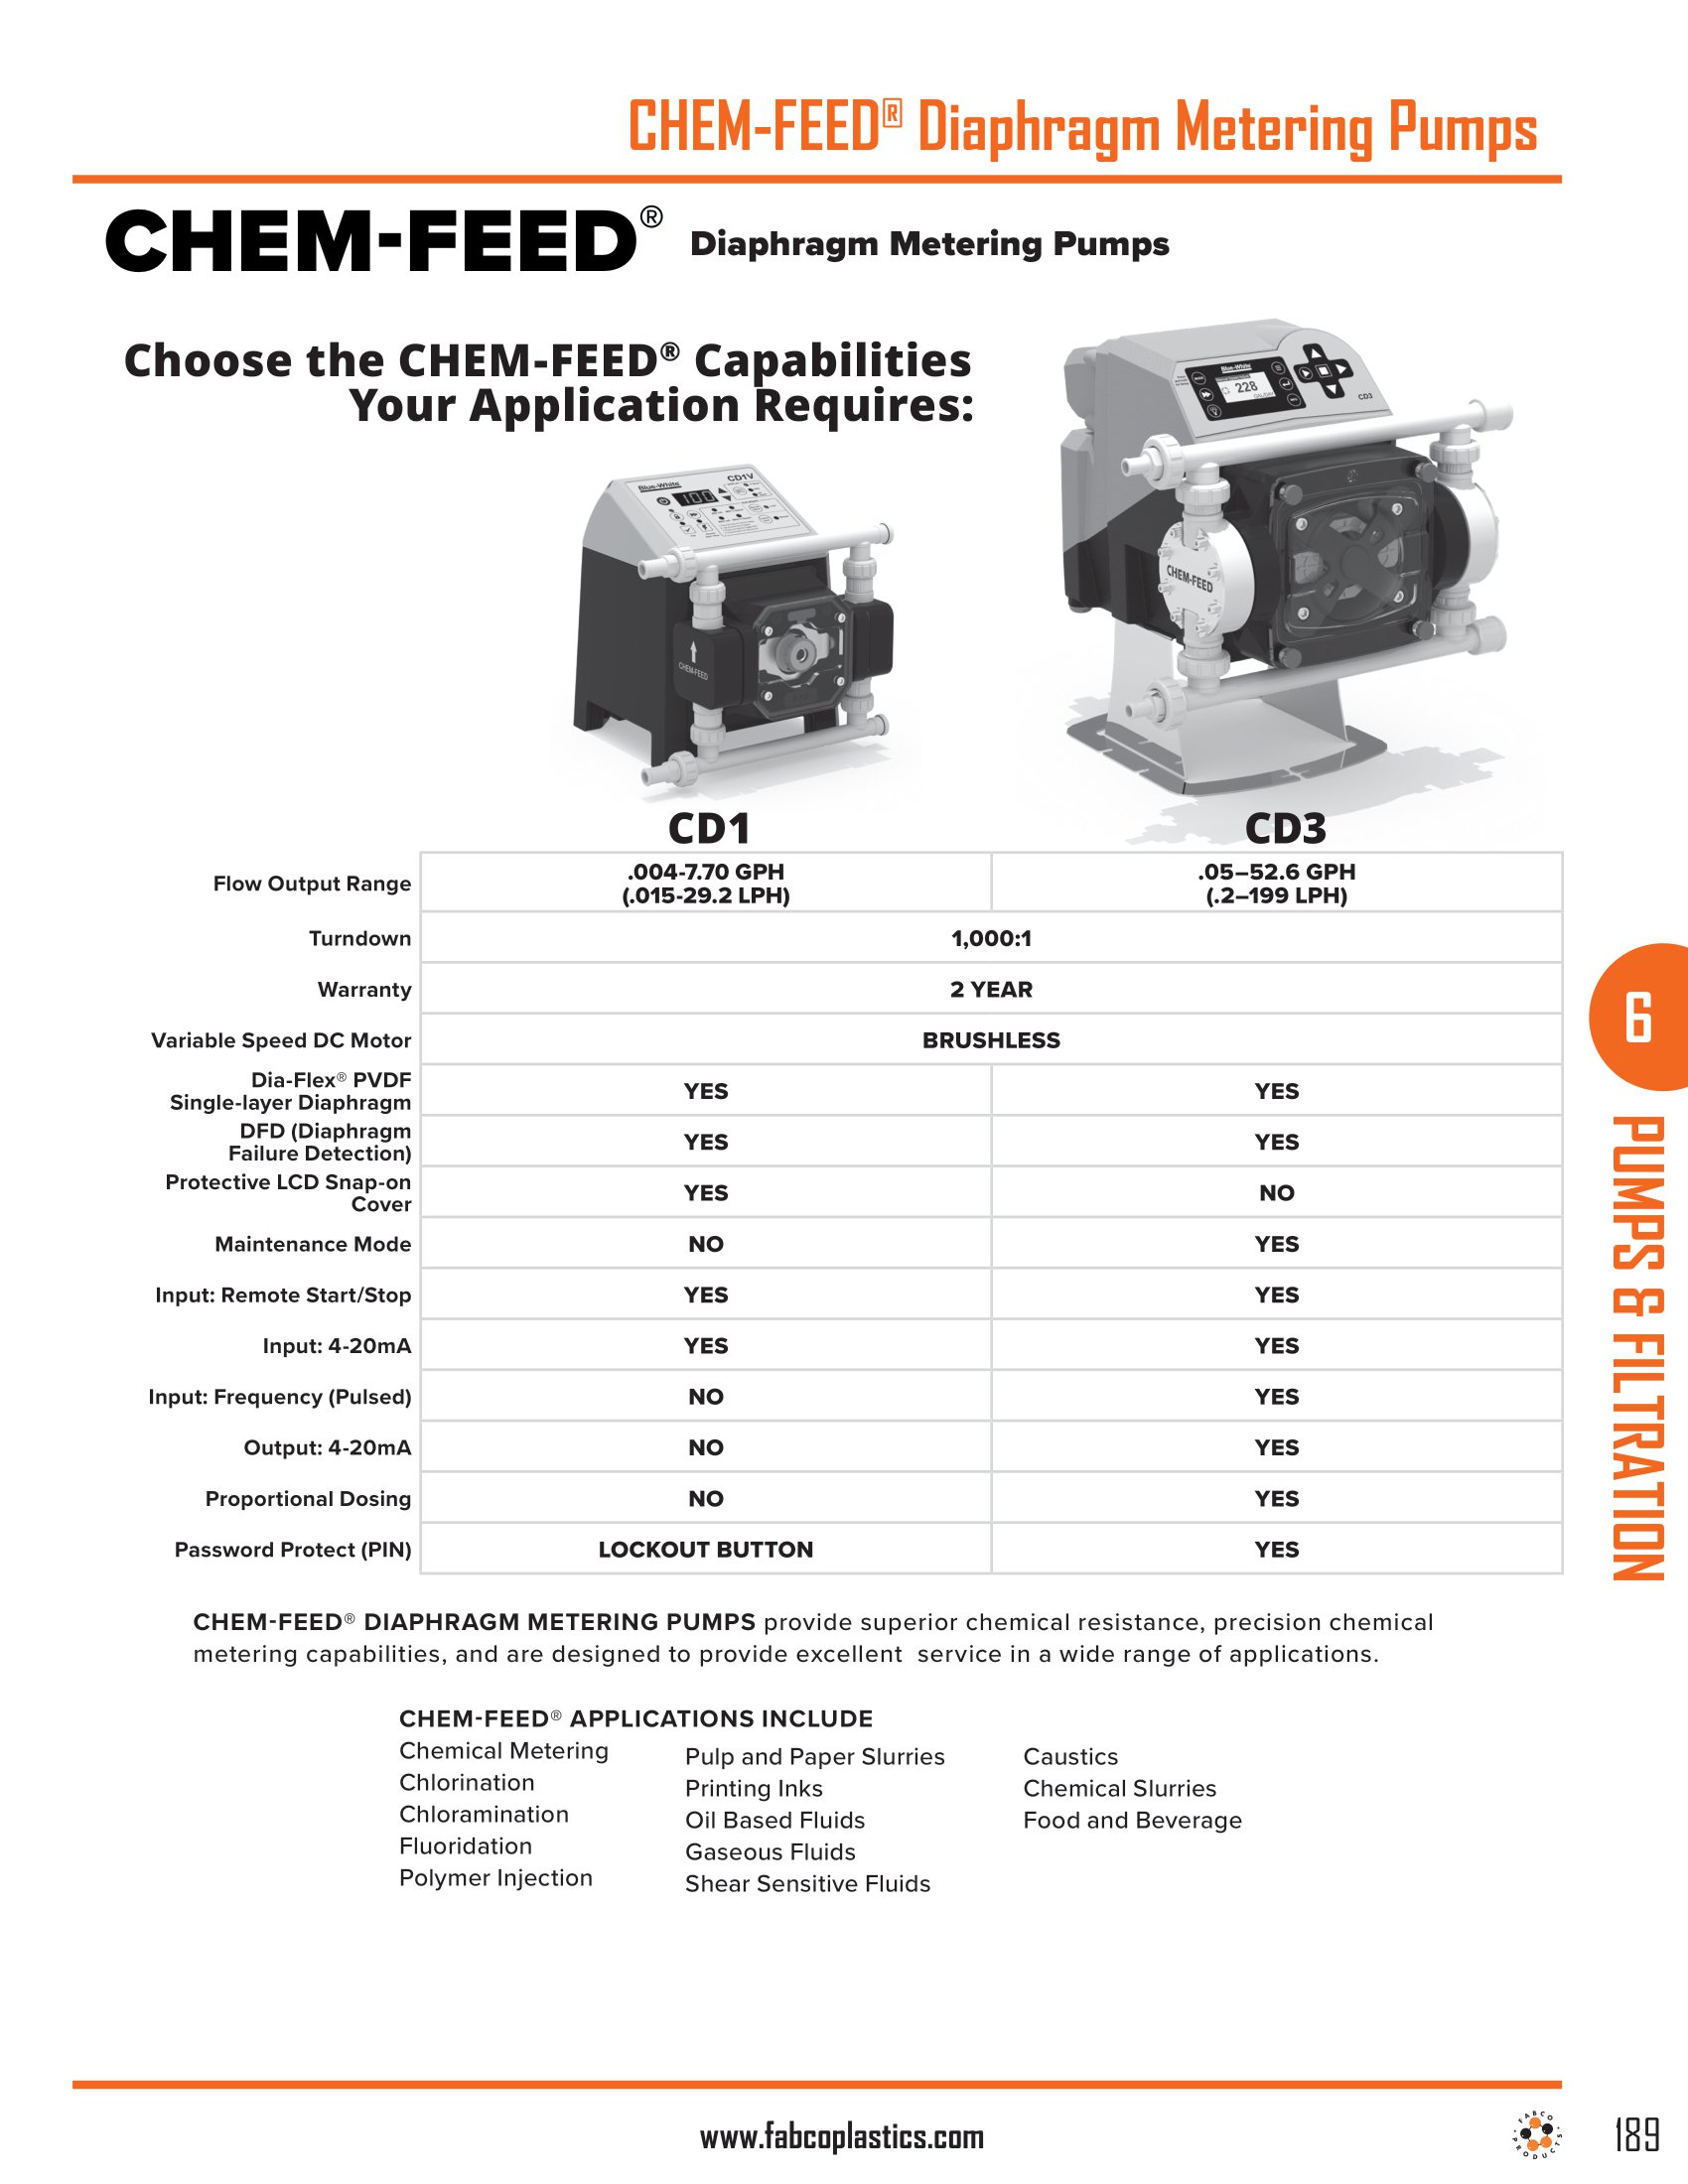 CHEM-FEED Diaphragm Metering Pumps